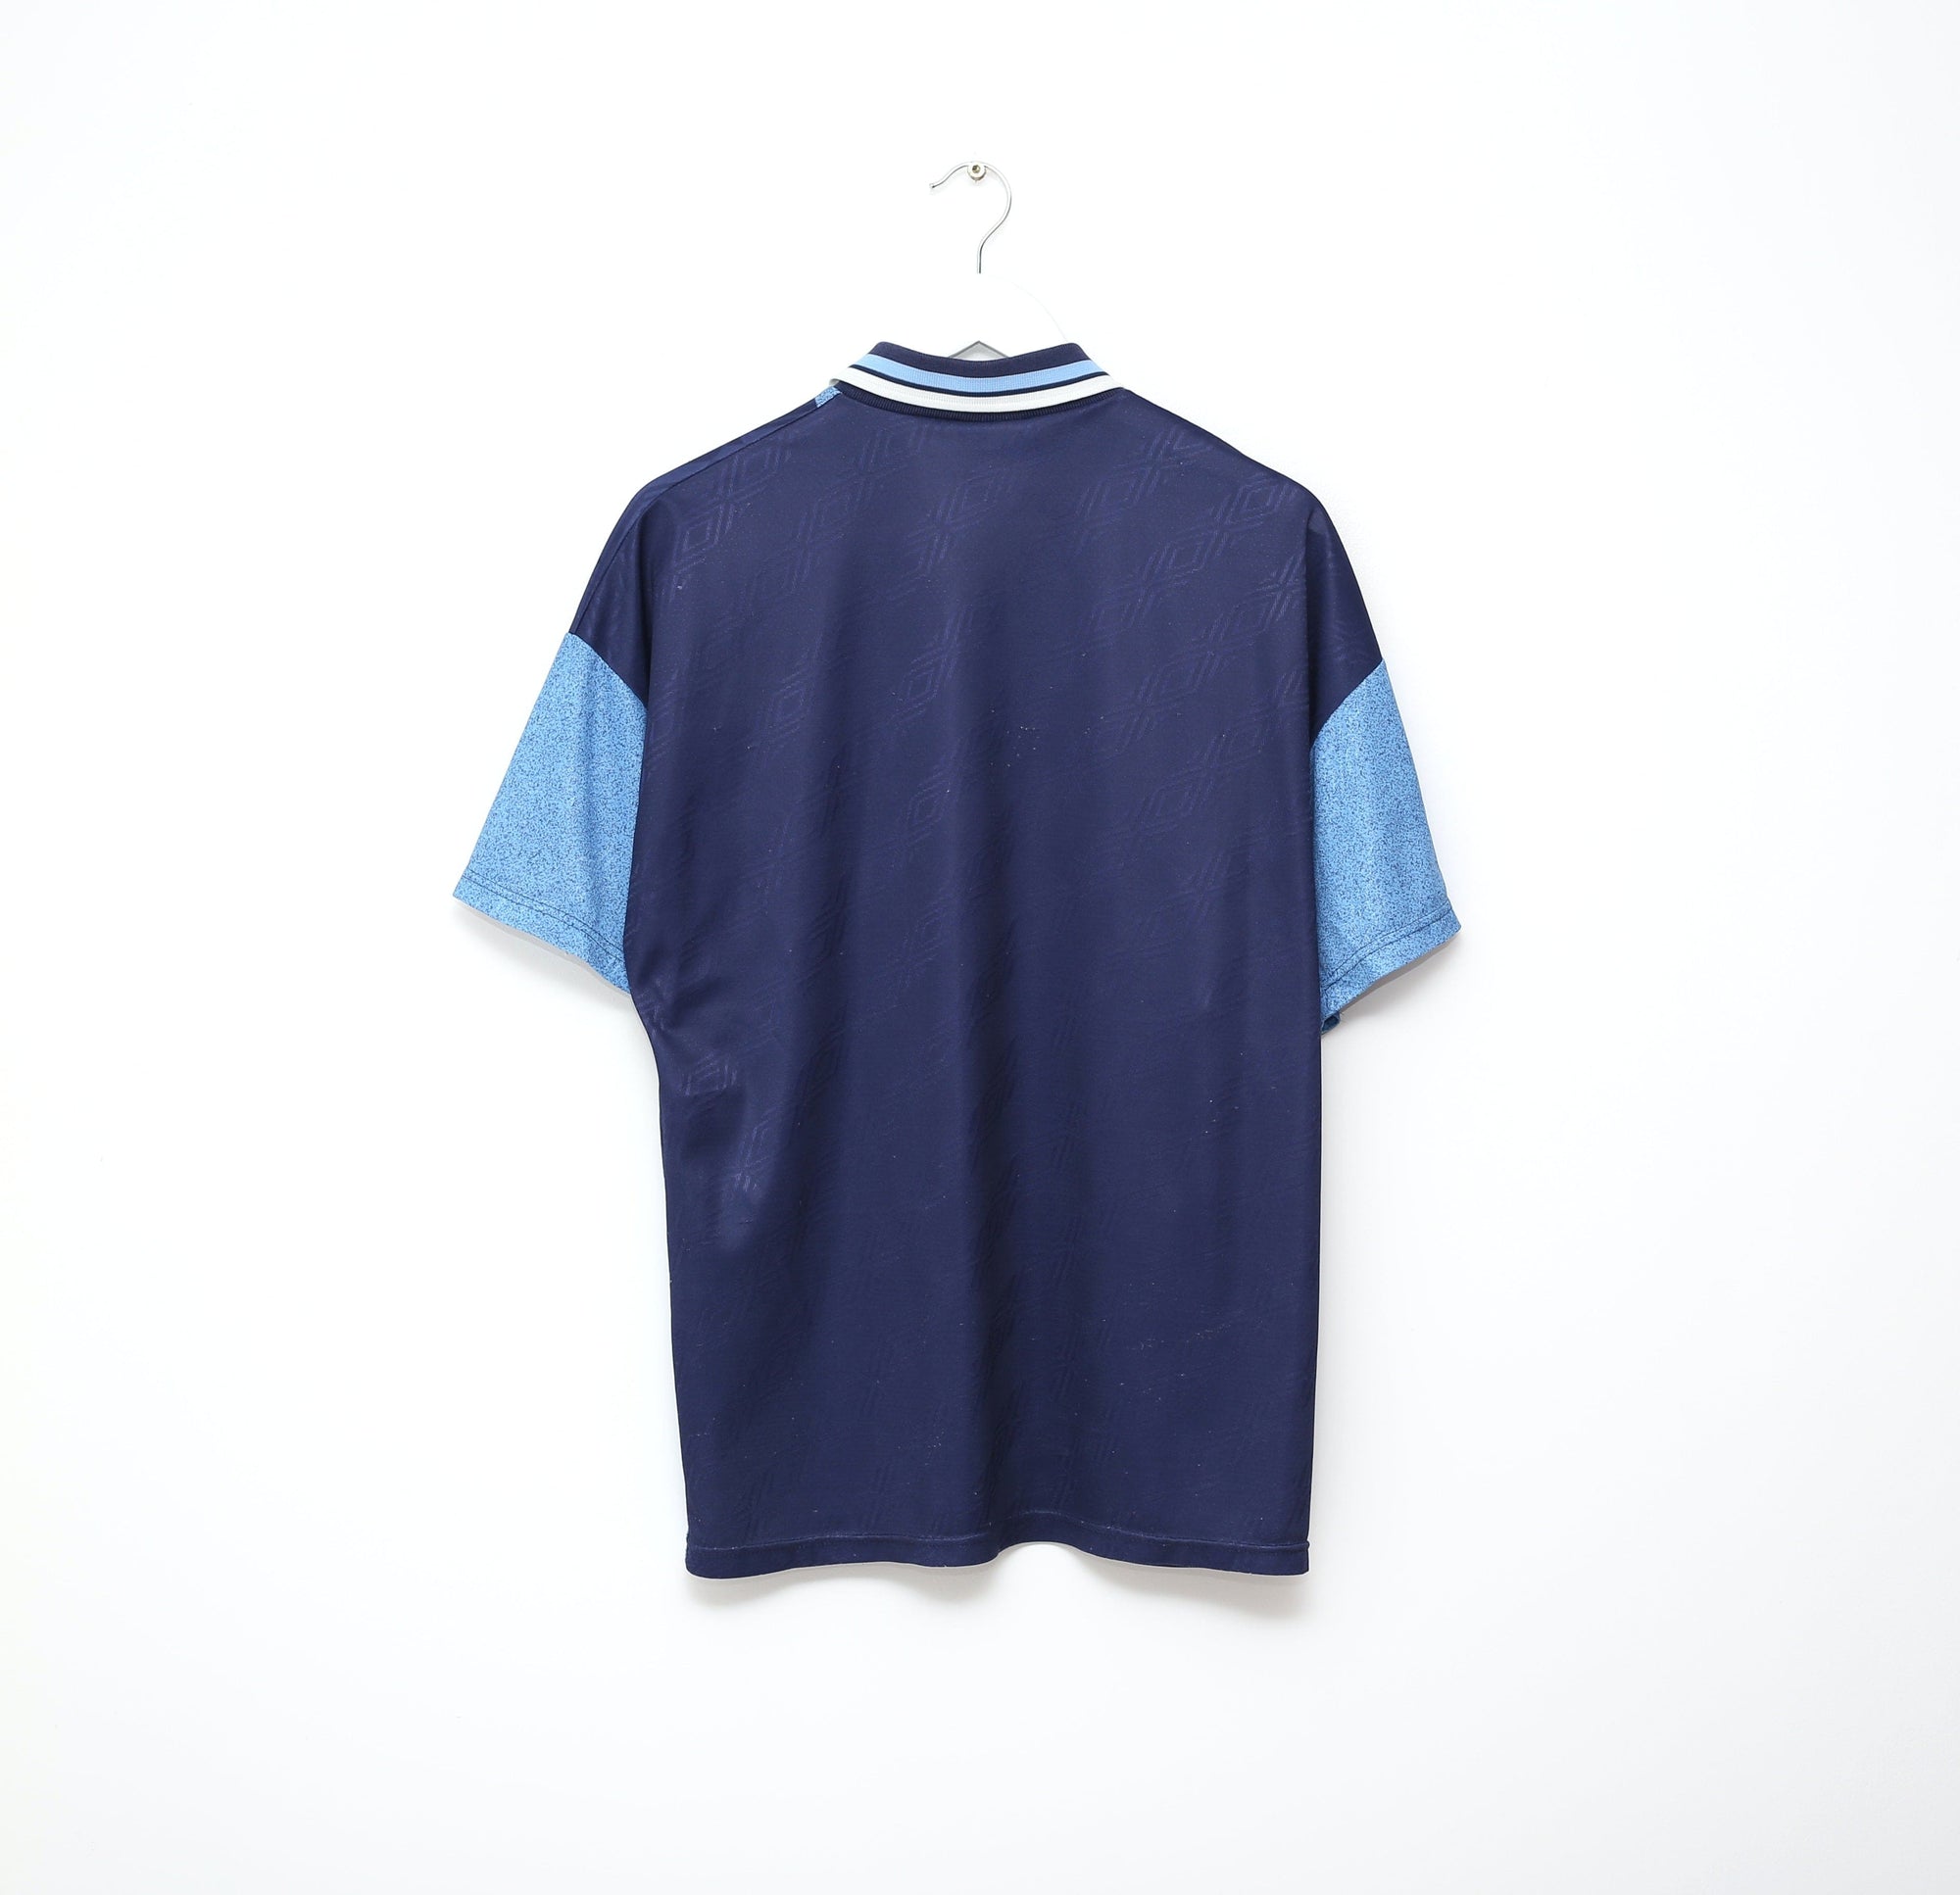 1994/96 SS LAZIO Vintage Umbro Football Away Shirt (L) Gascoigne Era